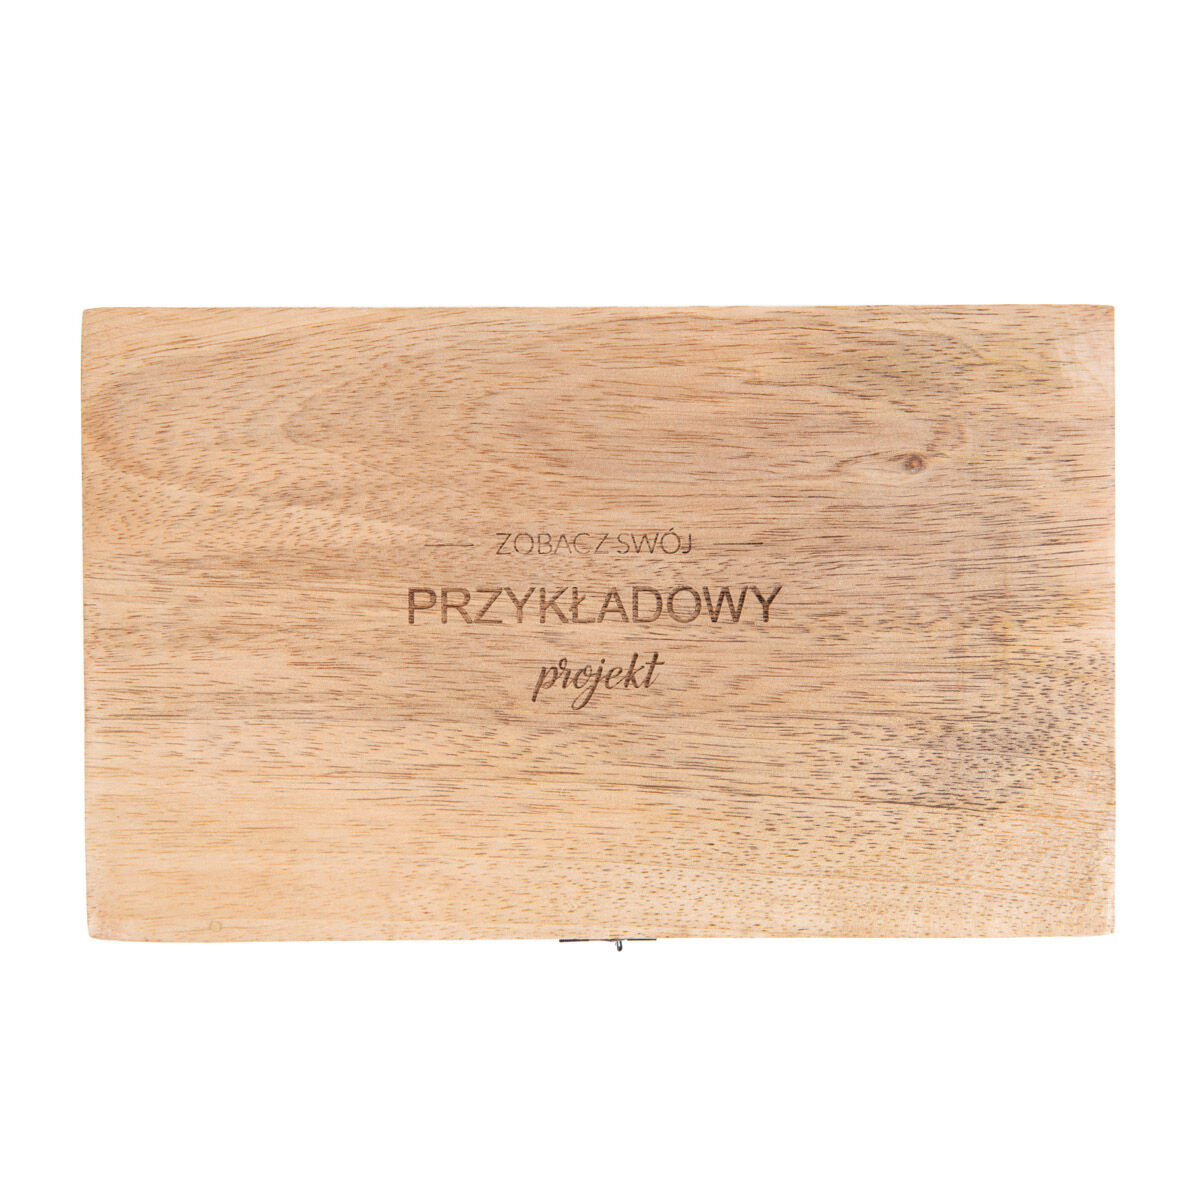 Szkatułka drewniana 22x14x8 cm z personalizacją PREZENT DLA GRZYBIARZA